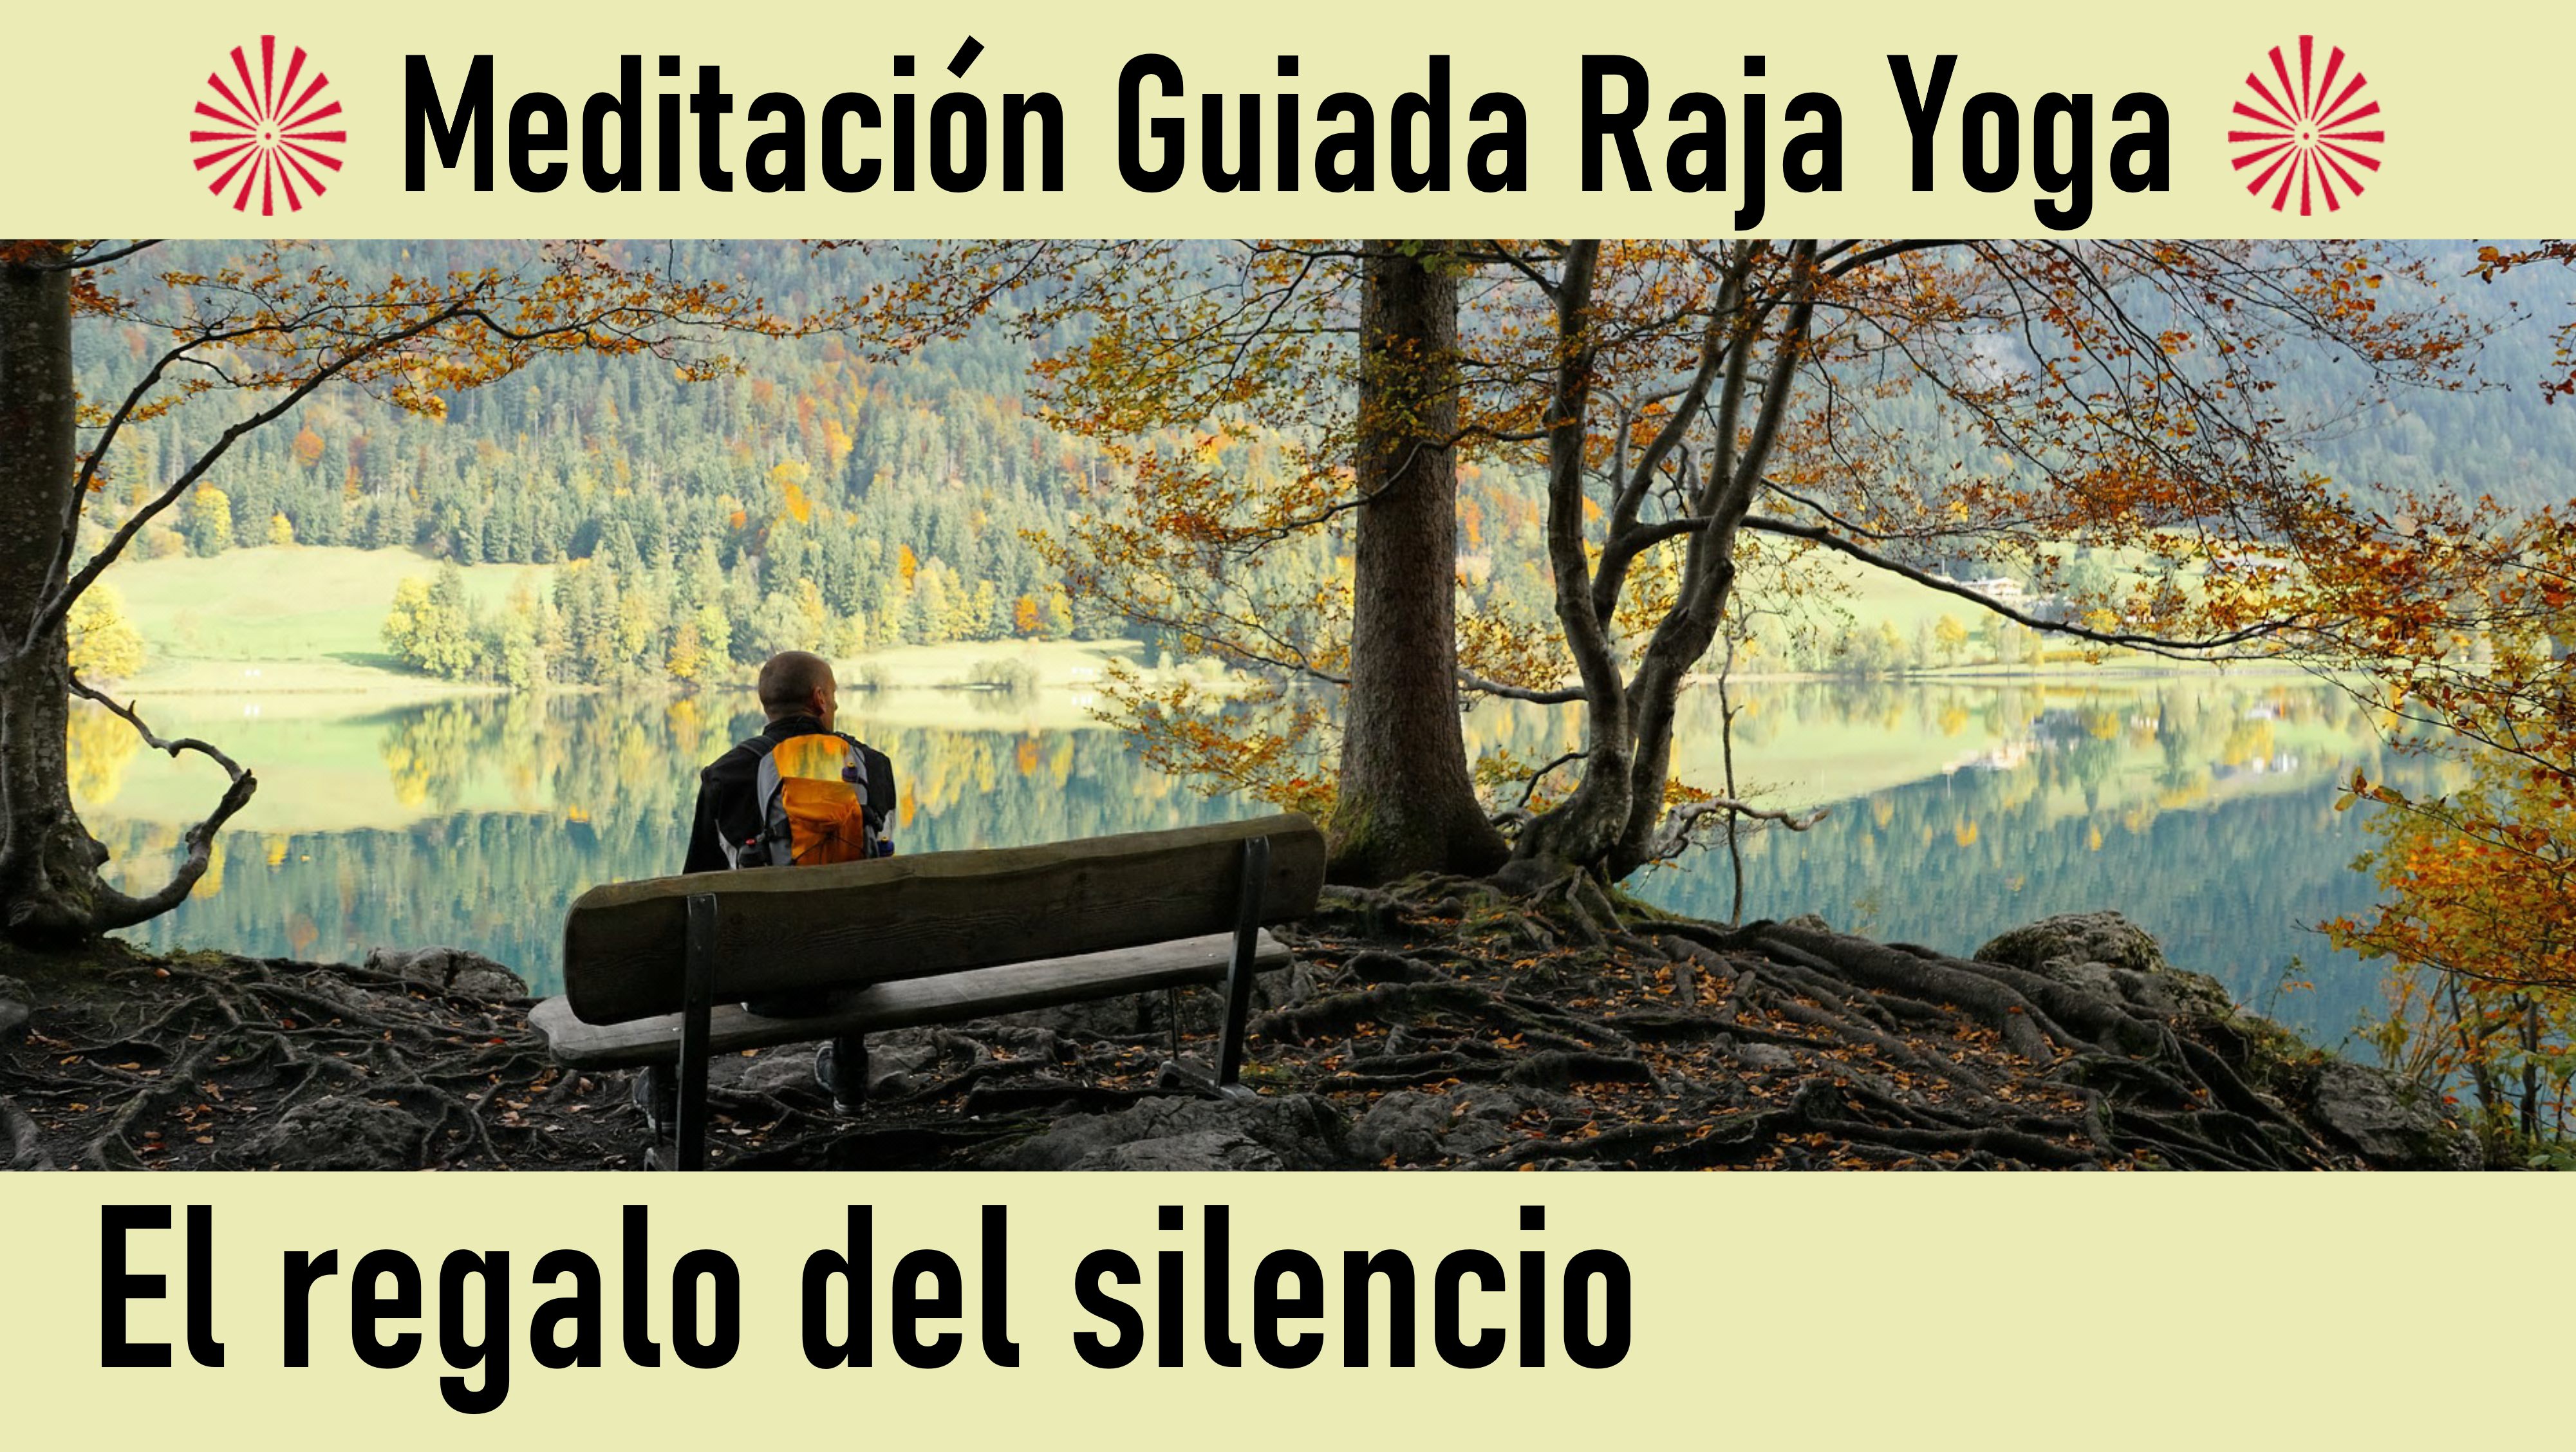 Meditación Raja Yoga: El regalo del silencio (16 Junio 2020) On-line desde Madrid